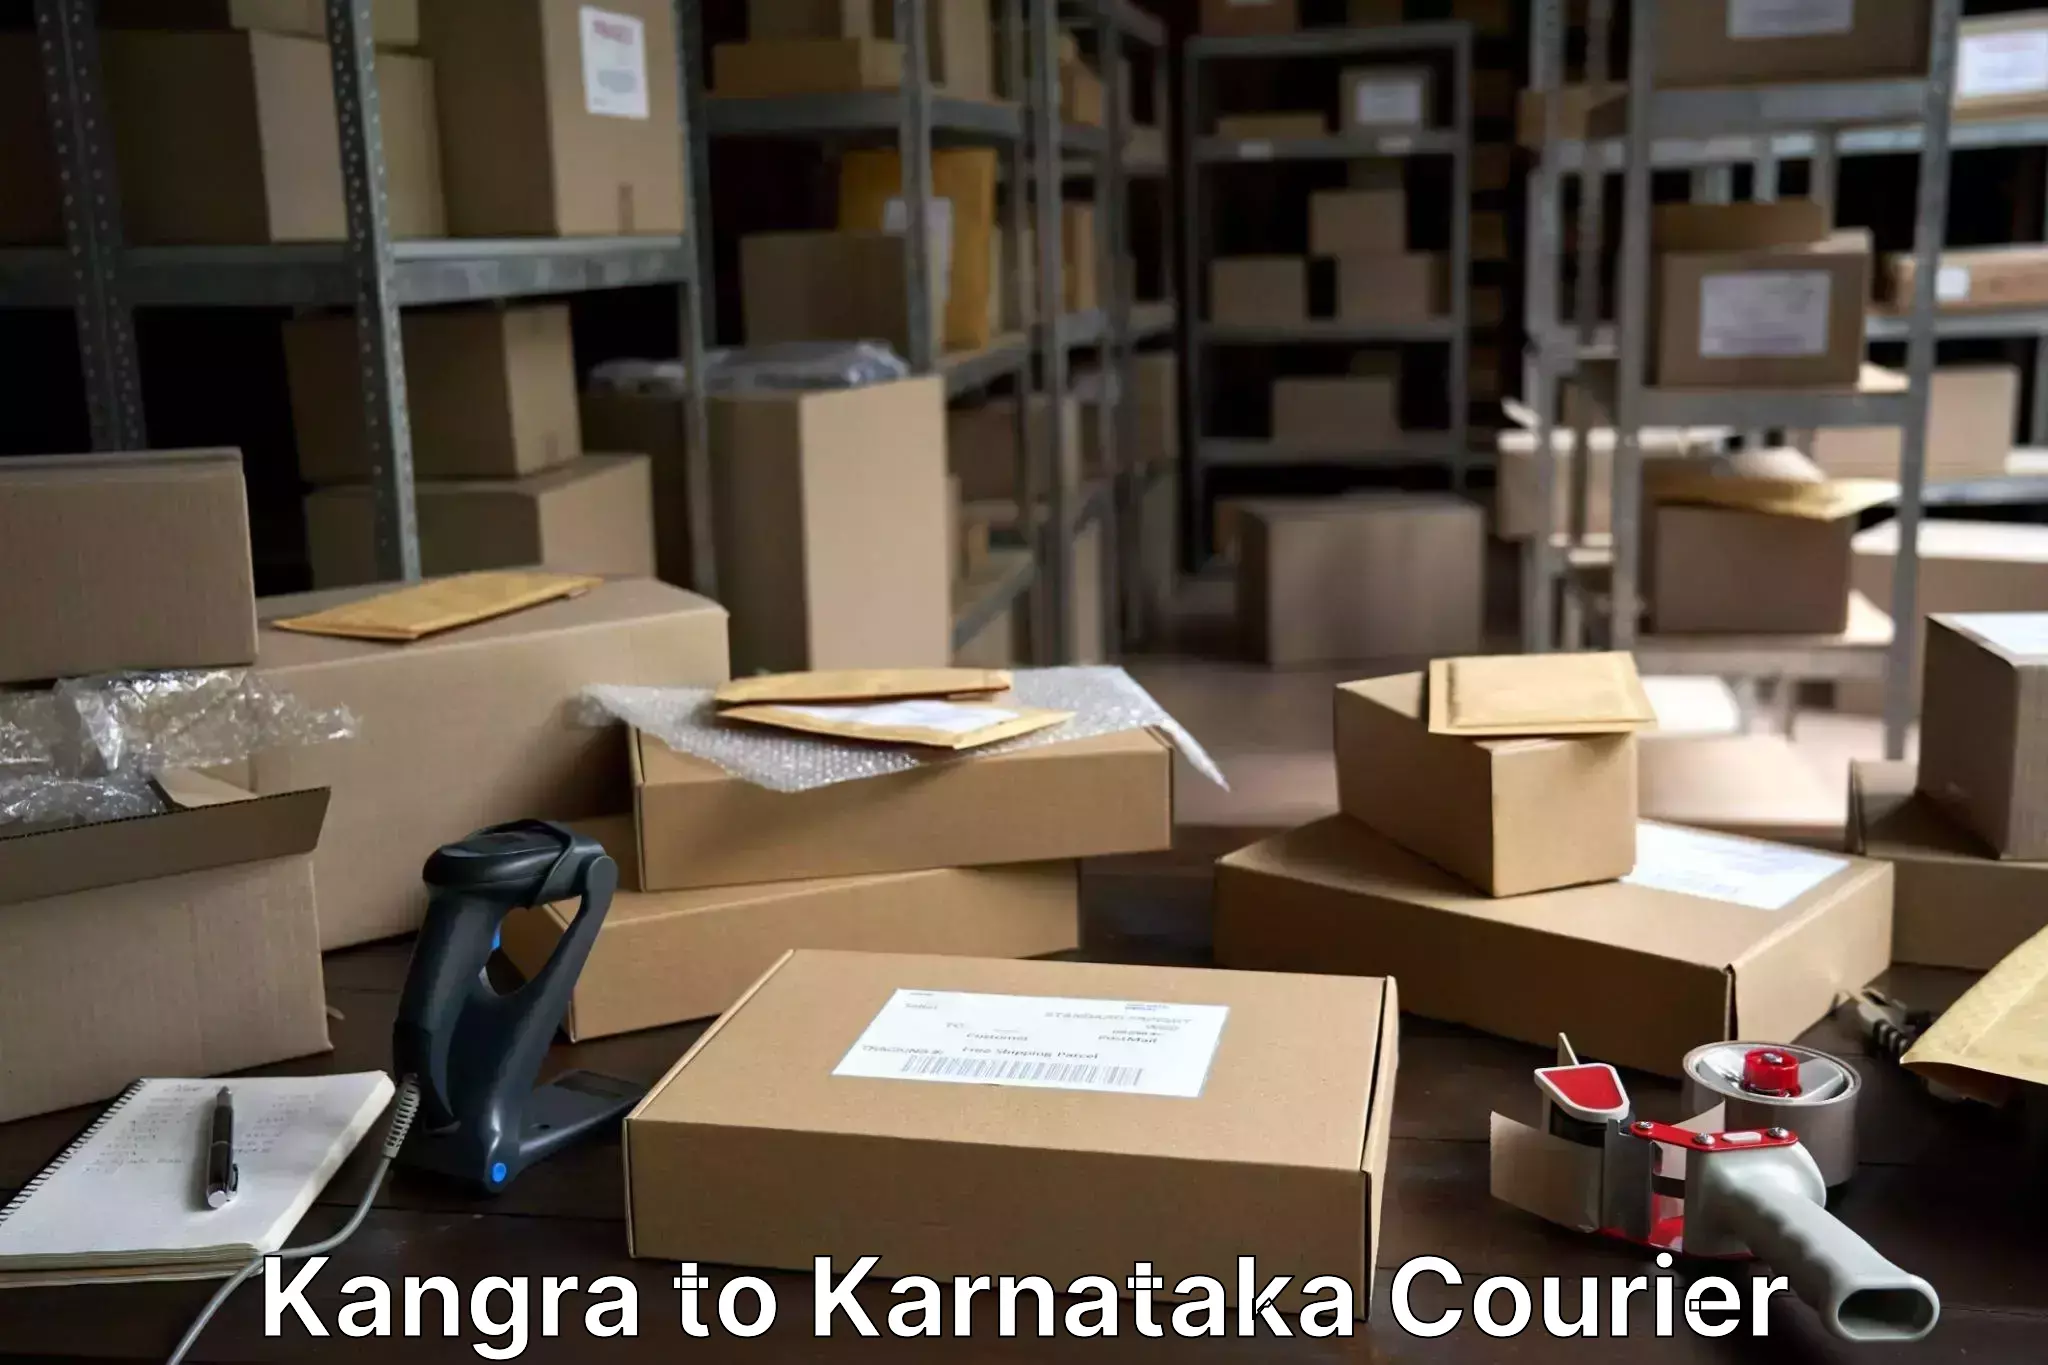 Baggage delivery technology Kangra to Karnataka